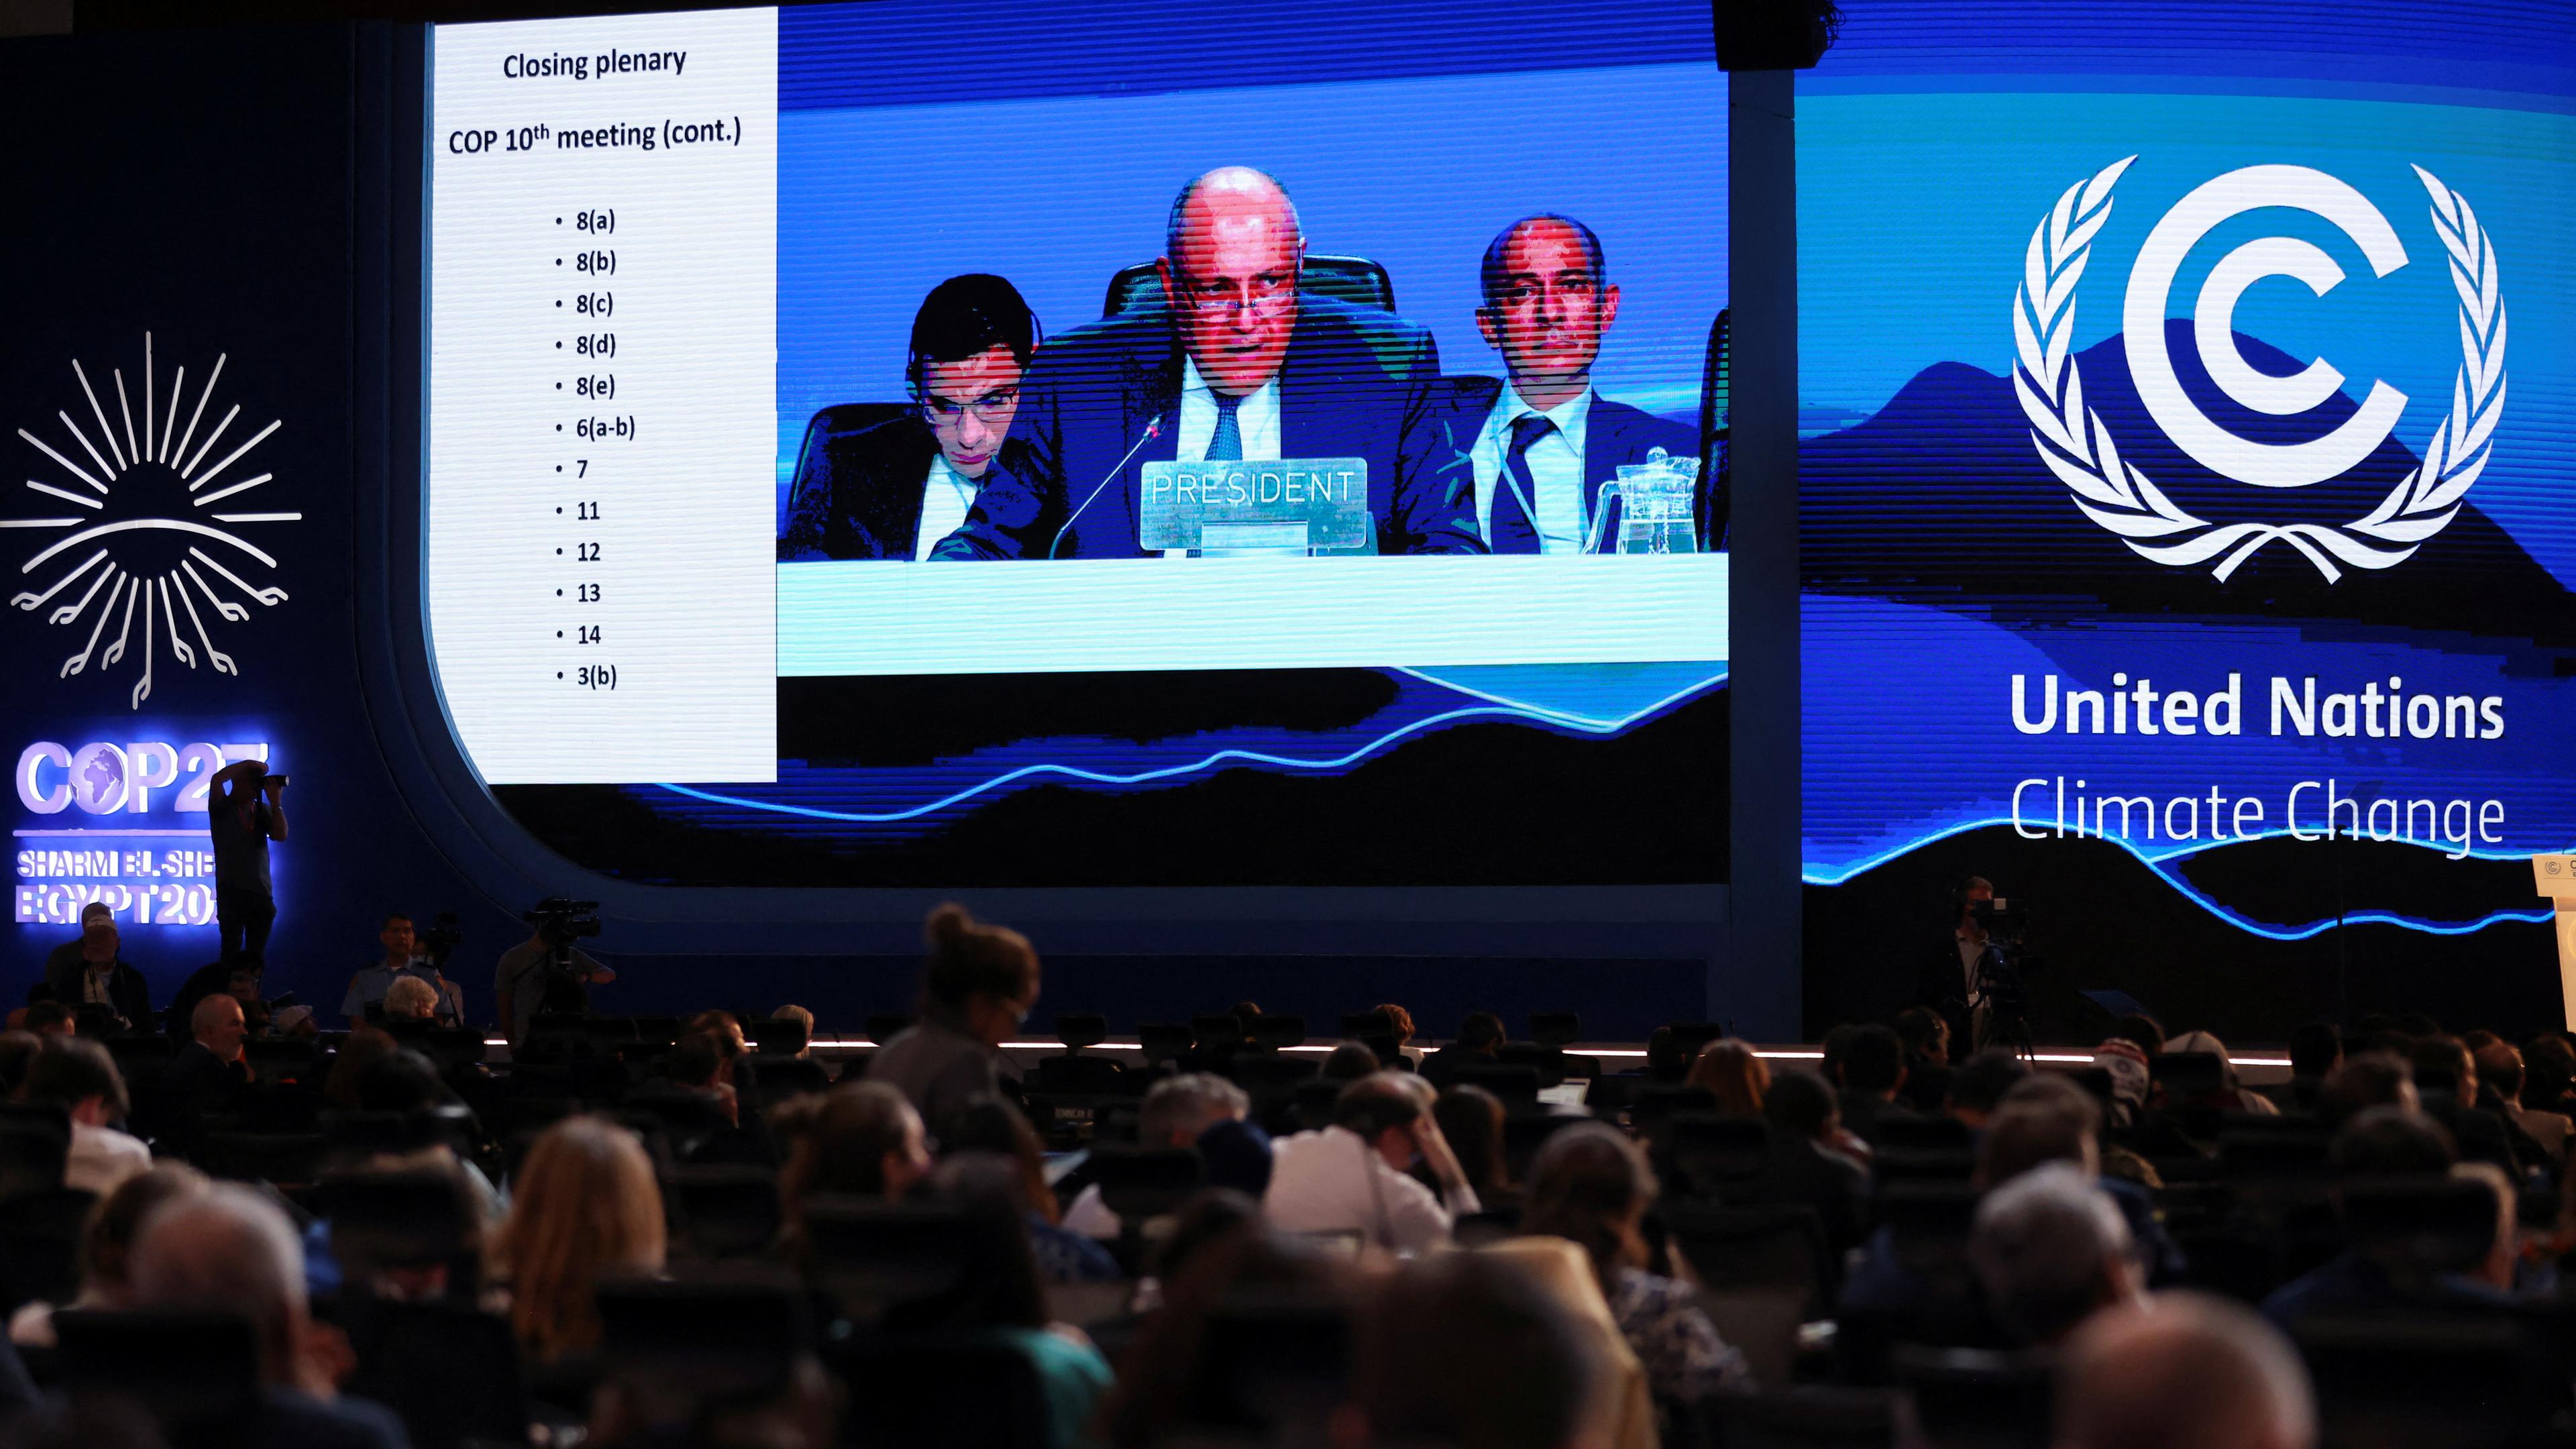 COP27 Präsident Sameh Shoukry ist auf einem großen Bildschirm Bildschirm zu sehen während seiner Rede. Im Vordergrund ist Publikum.